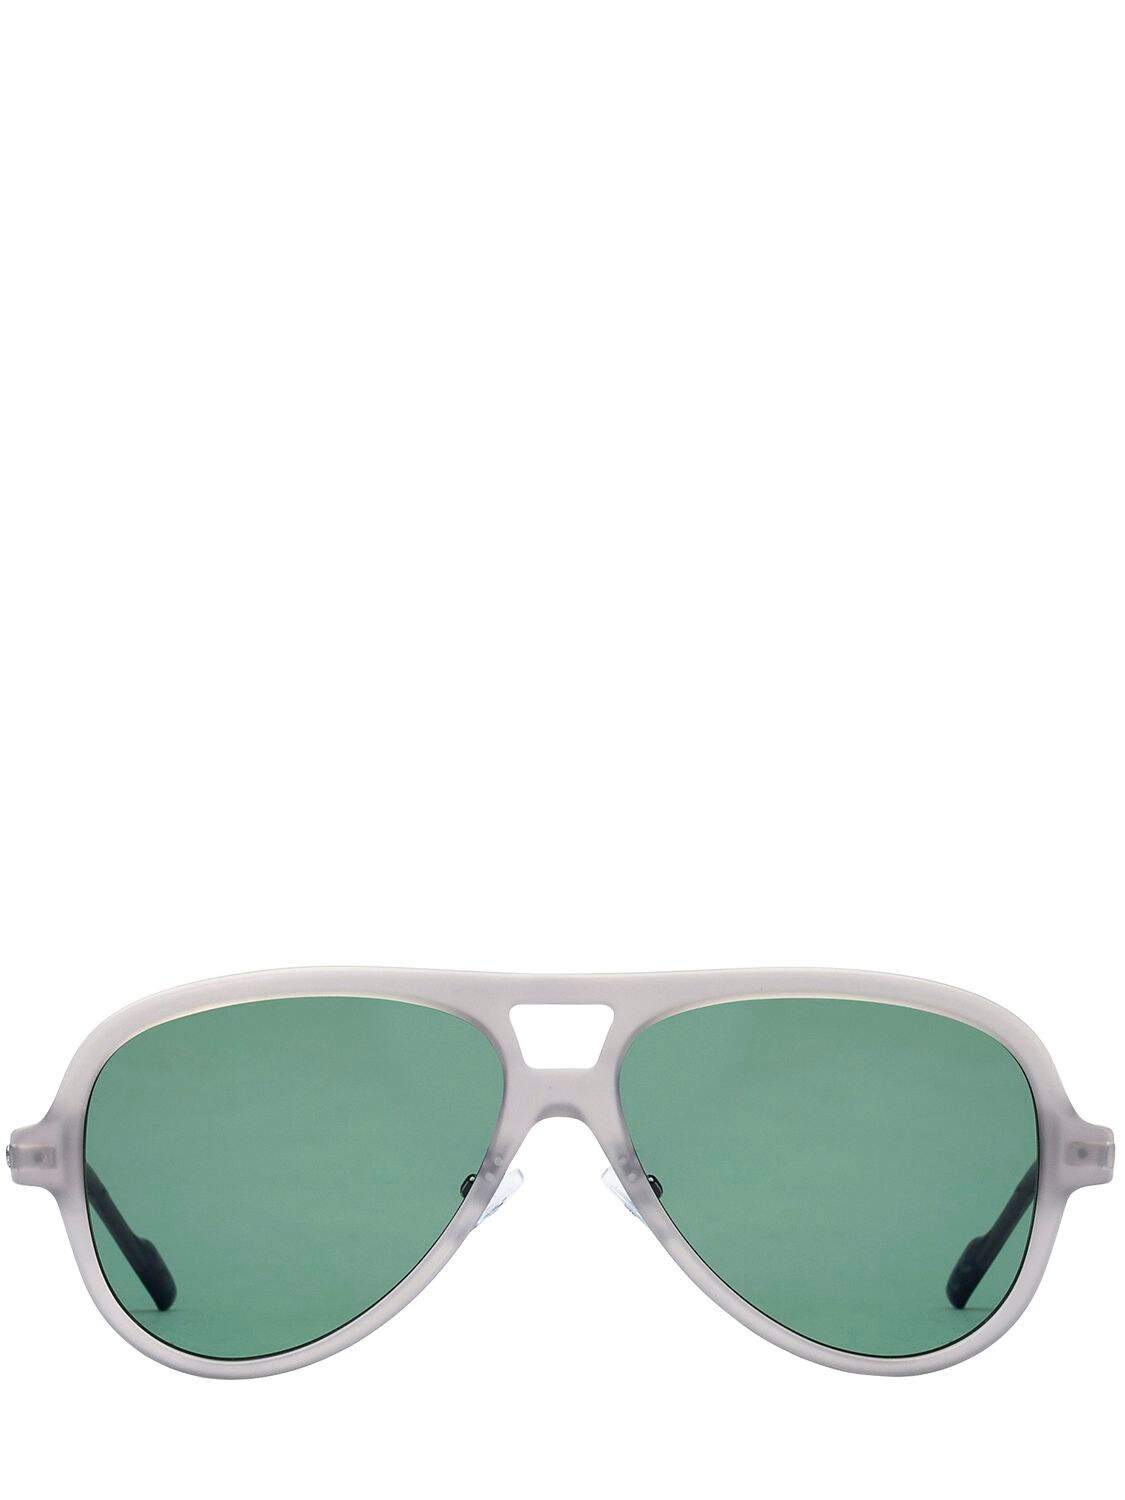 Adidas Originals By Italia Independent Acetate Aviator Sunglasses In Dark Grey